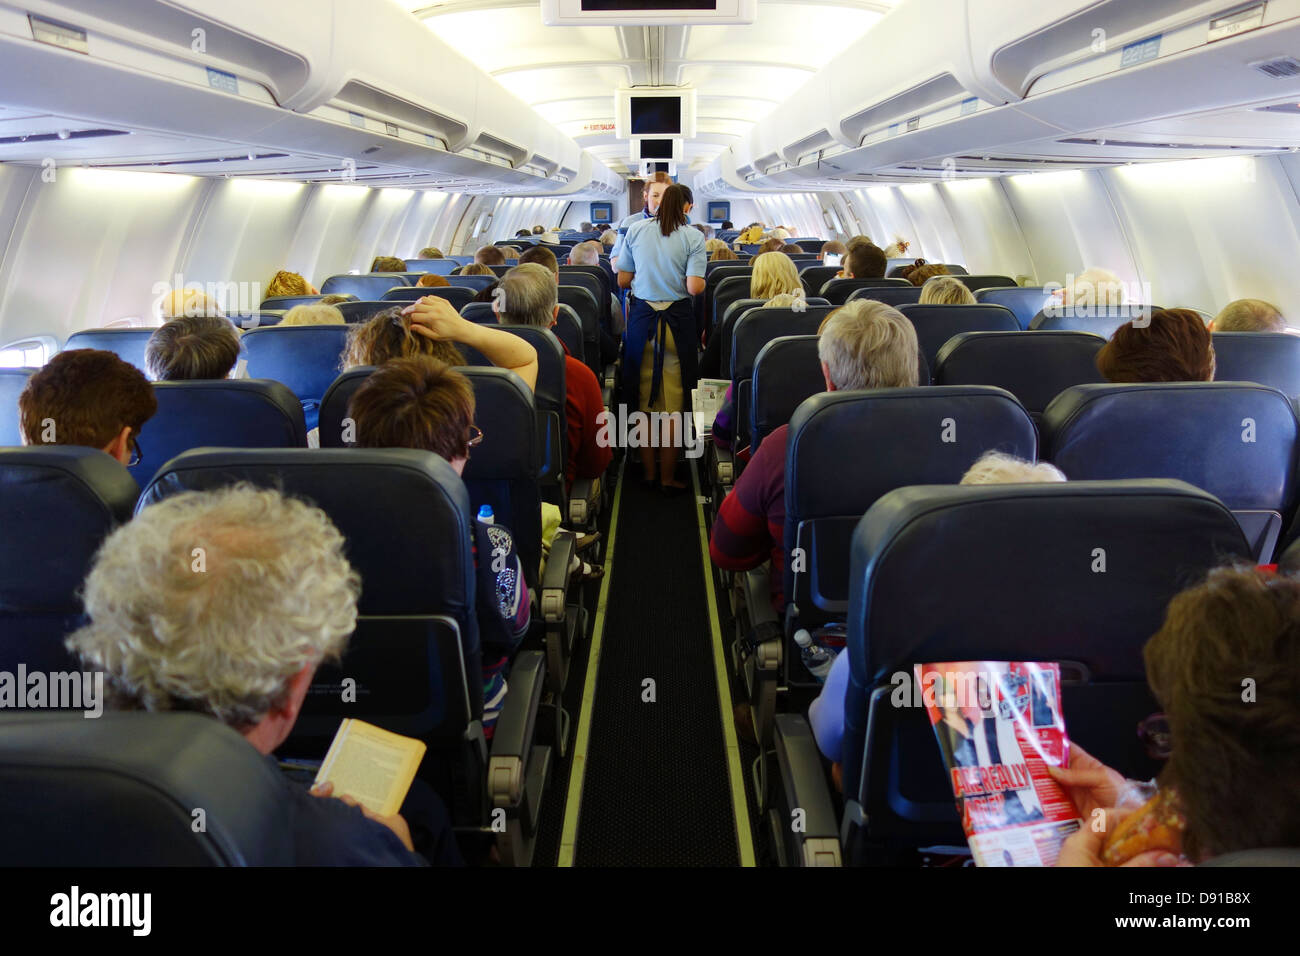 Passagiere in einem Flugzeug, Innenansicht Sitzecke auf Flugzeugen, Passagiere in der Economy-sitzen während des Fluges Stockfoto